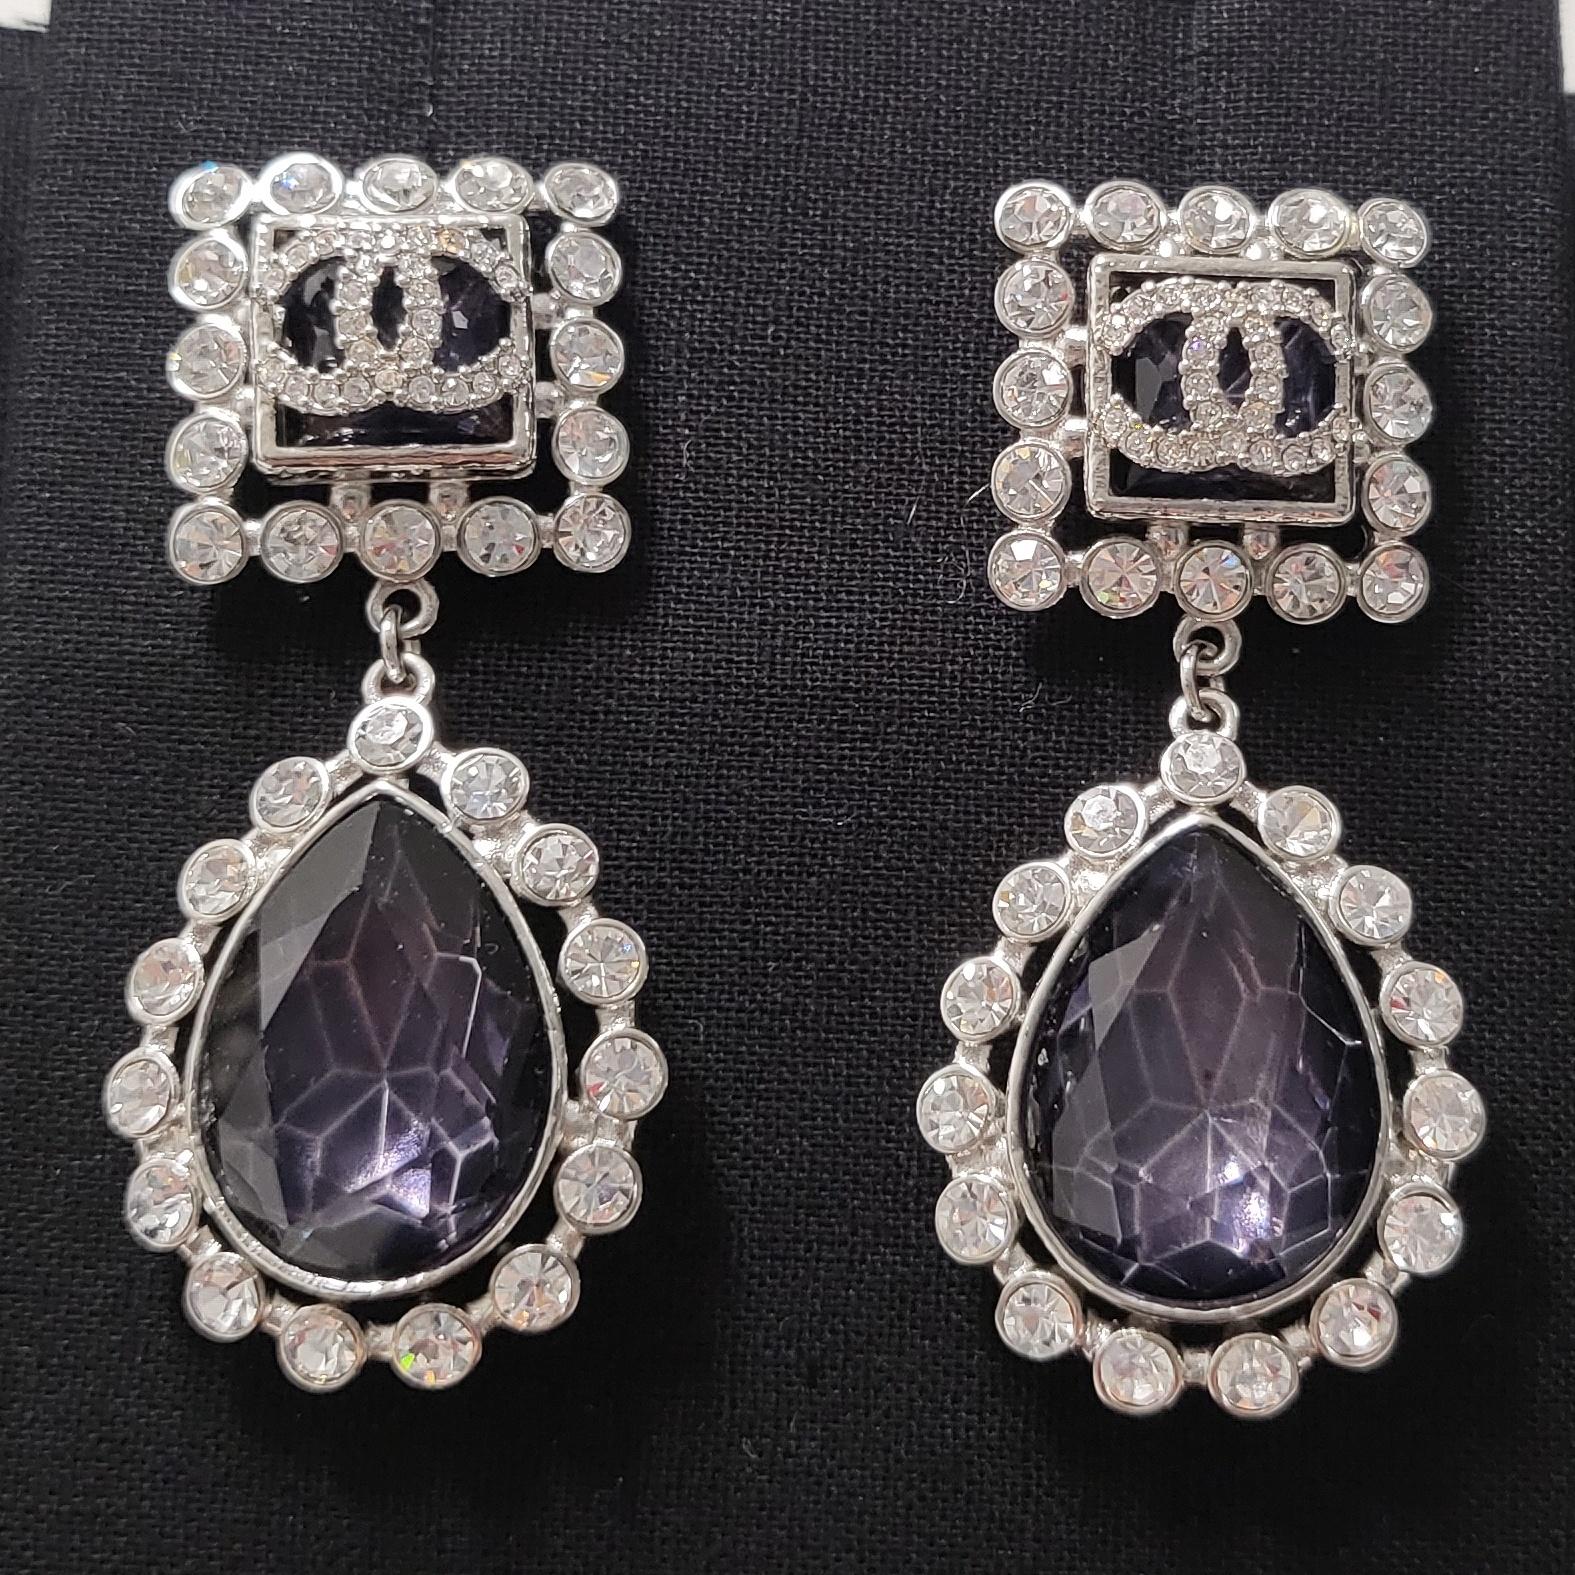 Sie sind der Inbegriff von Eleganz und Raffinesse: die Chanel CC Purple Drop Crystal and Rhinestone Silver Earrings. Diese exquisiten Ohrringe wurden mit viel Liebe zum Detail gefertigt und zeugen von Chanels Erbe des zeitlosen Luxus und der